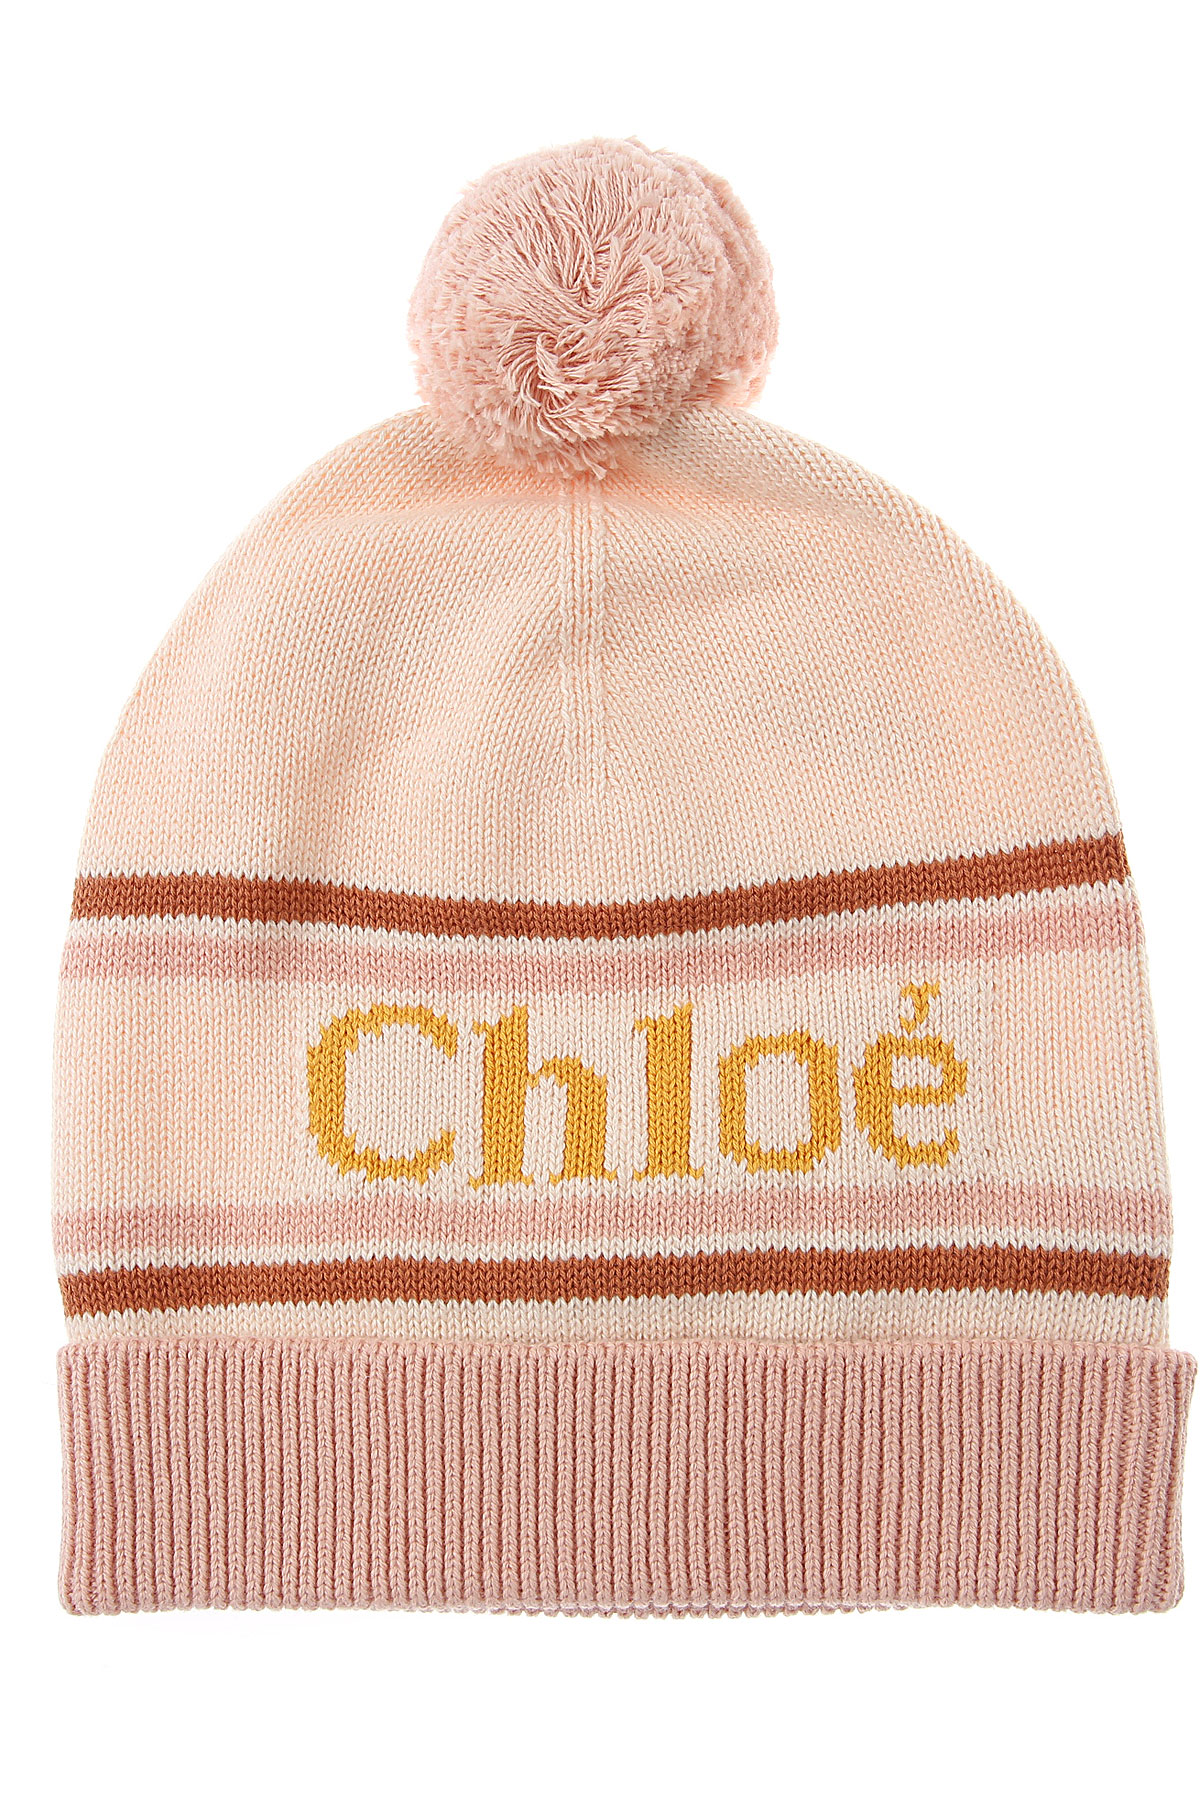 Chloe Kinder Hut für Mädchen Günstig im Sale, Pink, Baumwolle, 2017, 52 54